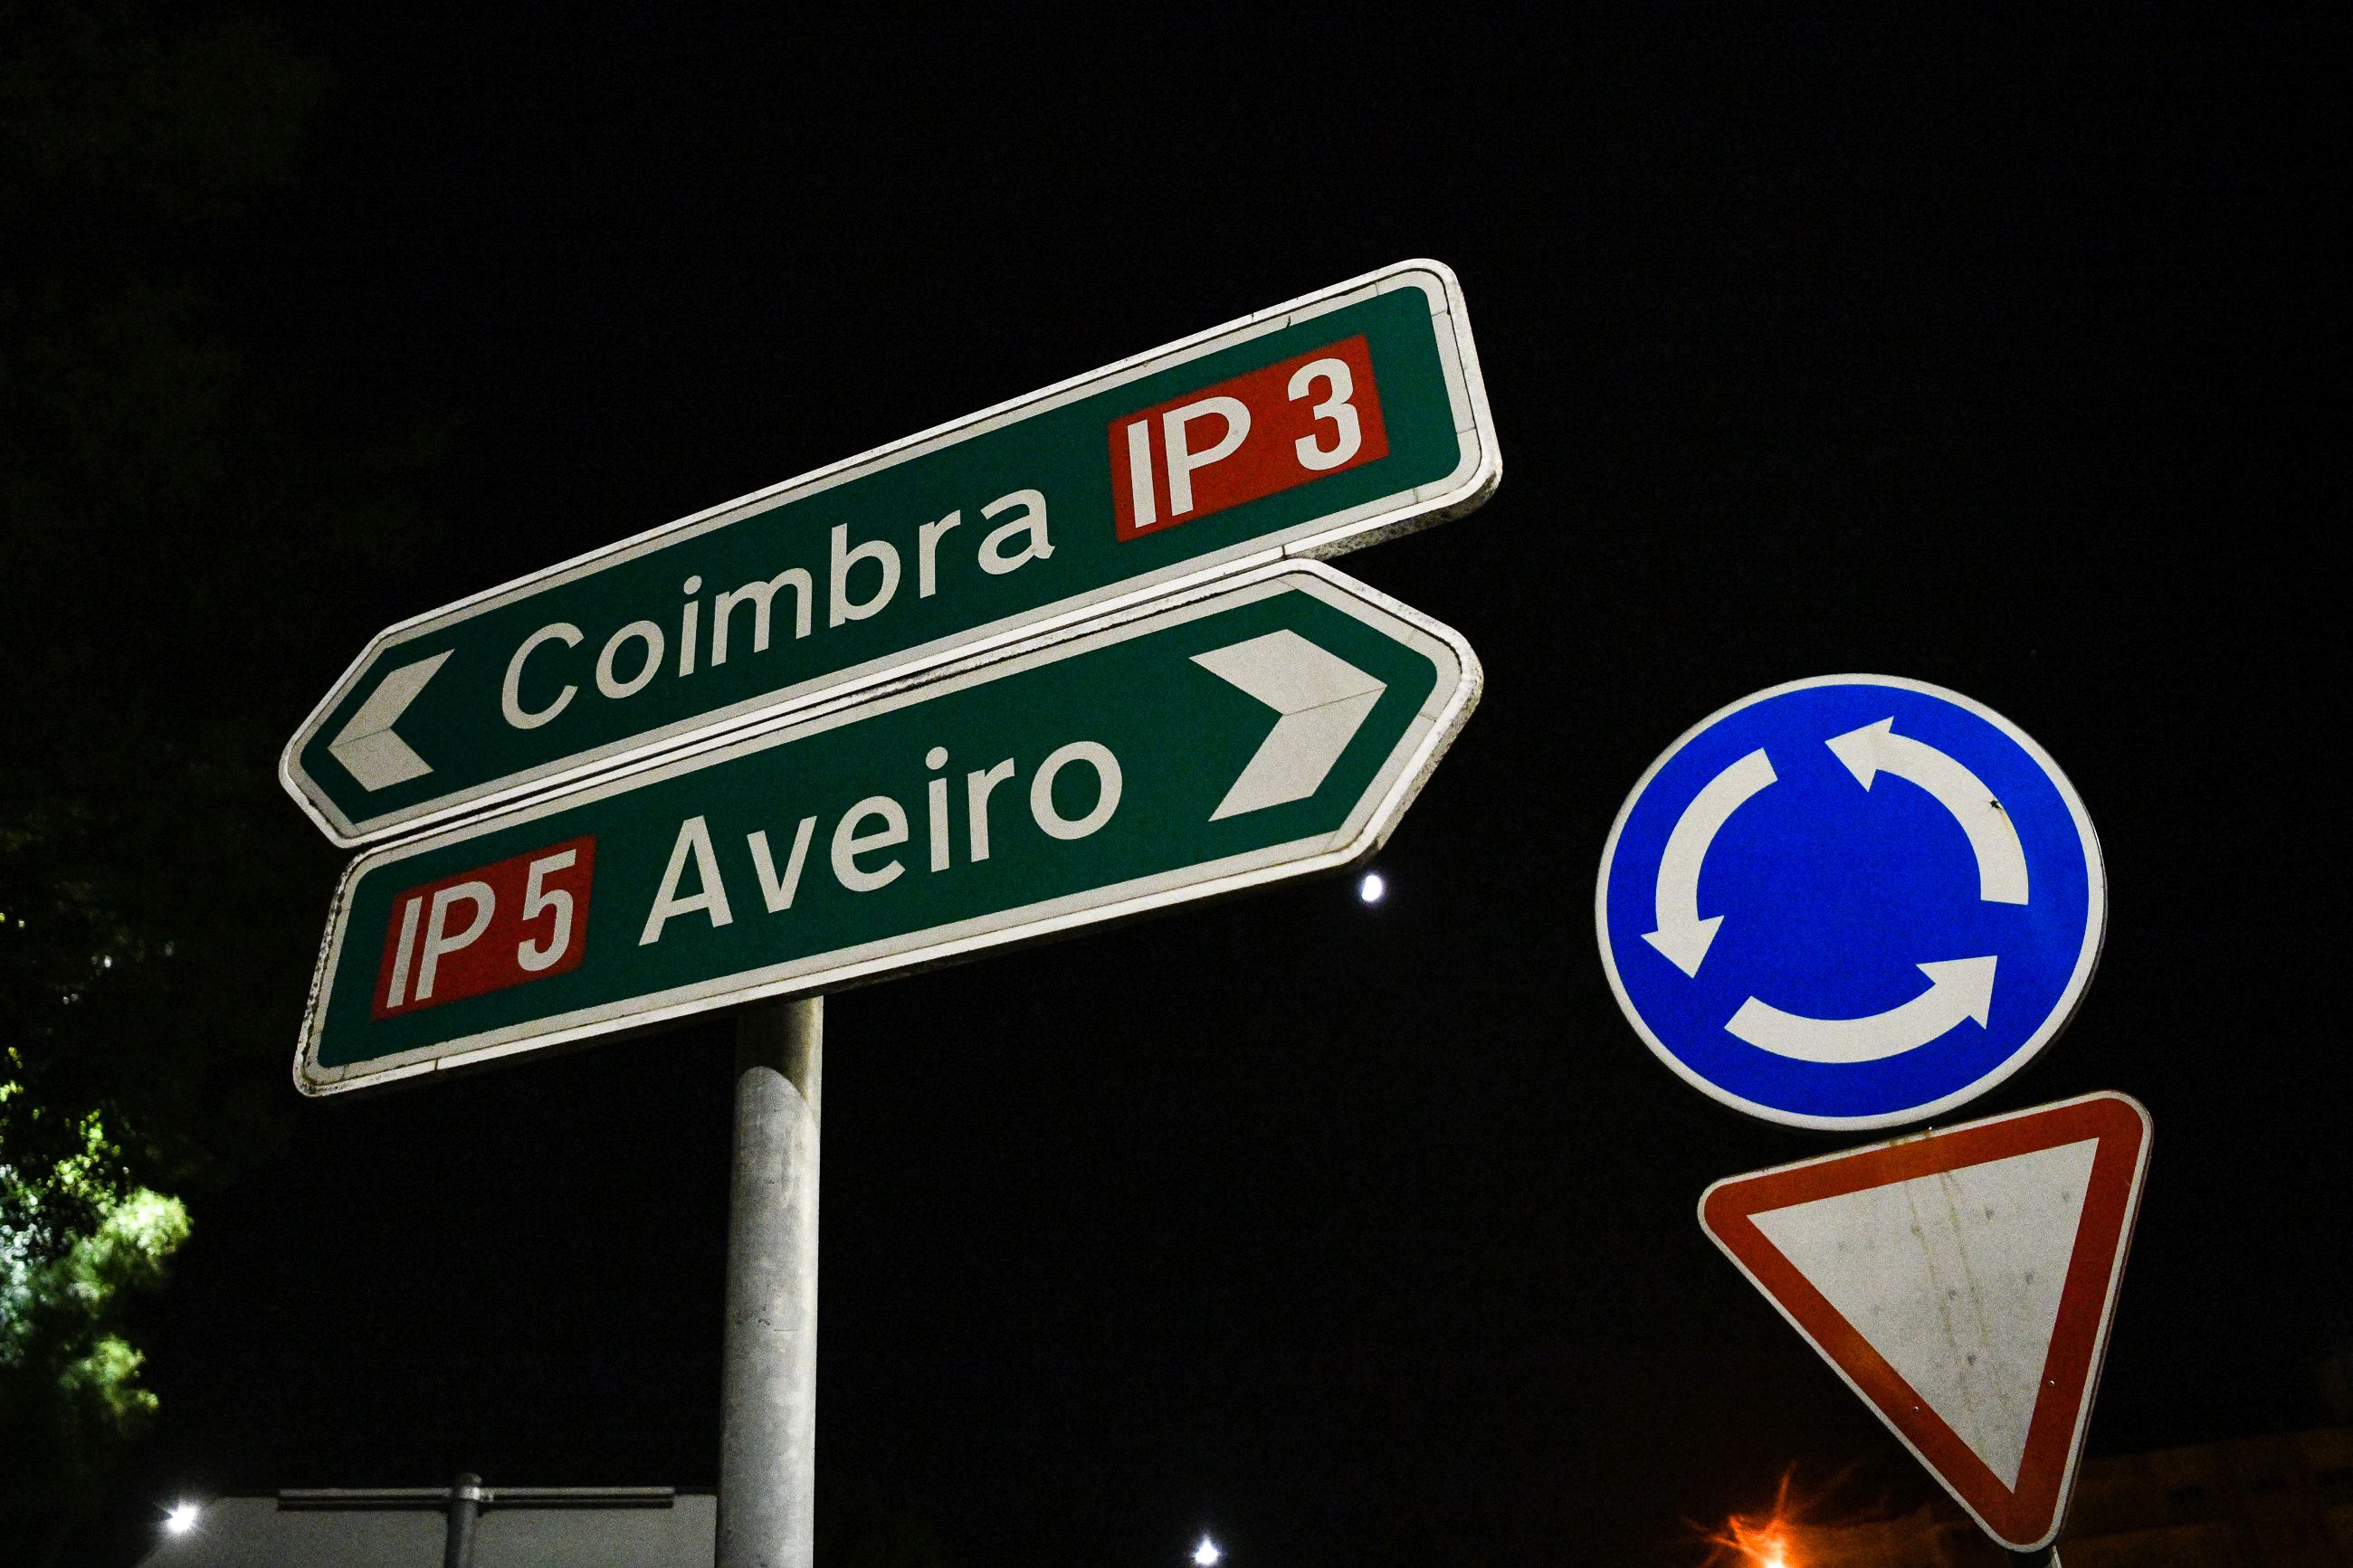 Placas do IP3 à noite direção coimbra aveiro com placas de sinalização de rotunda